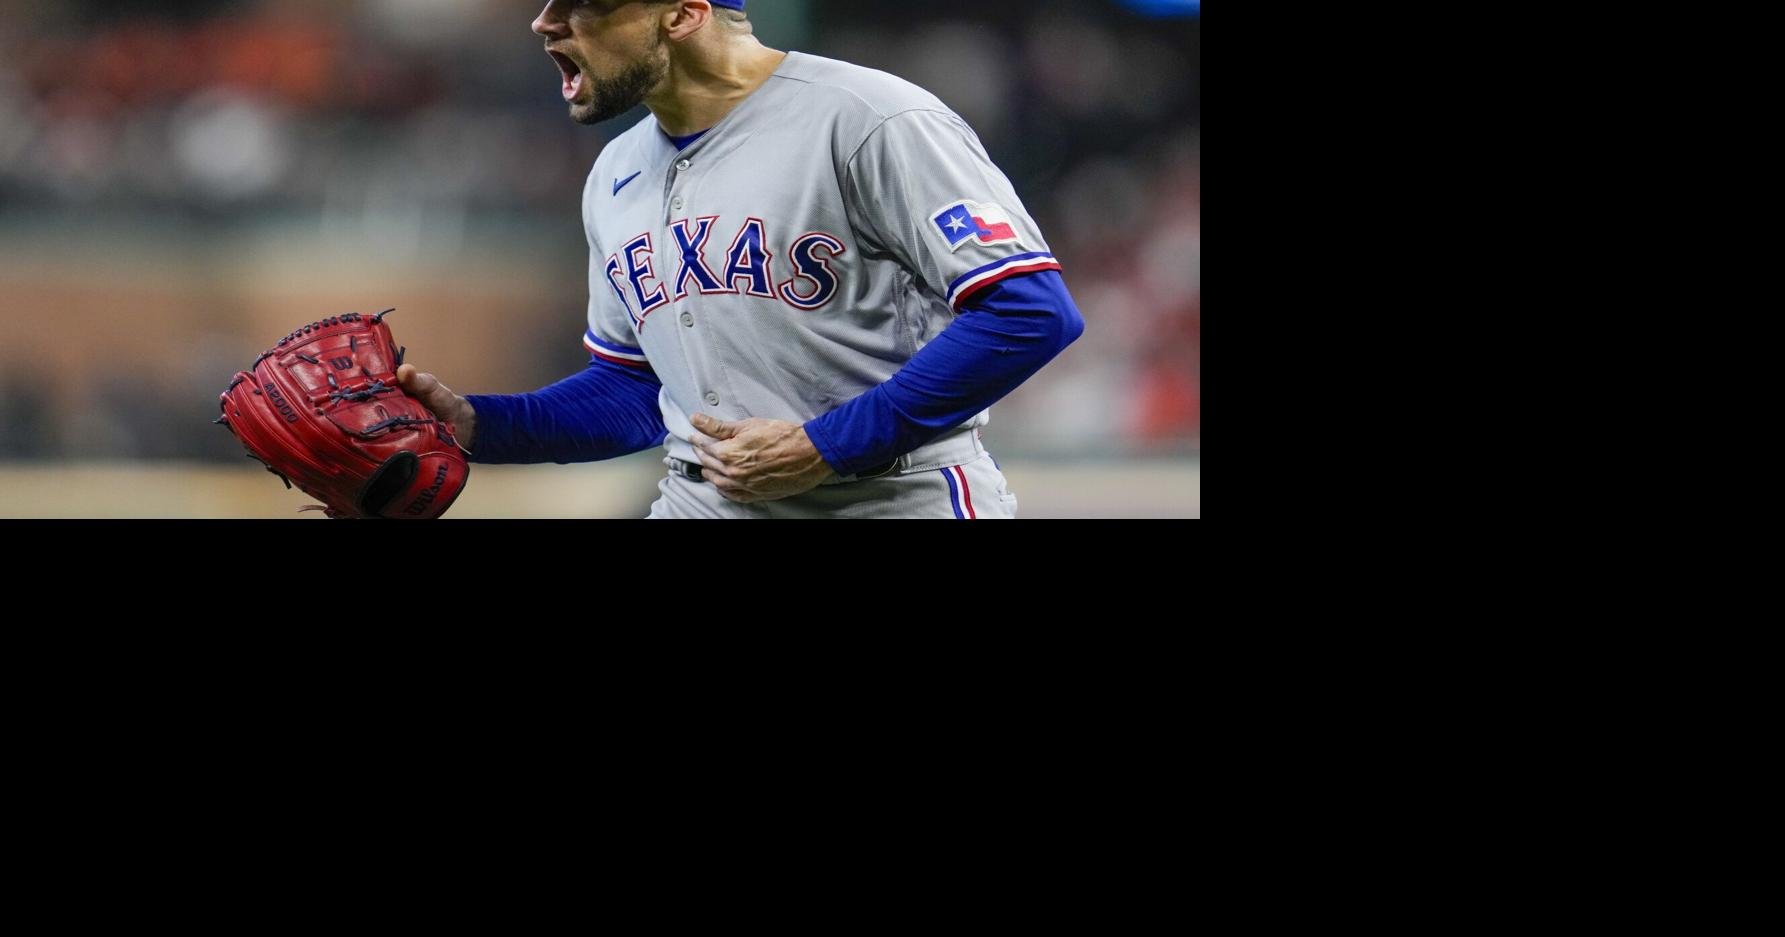 Men's Texas Rangers Corey Seager 2023 Replica Blue Player